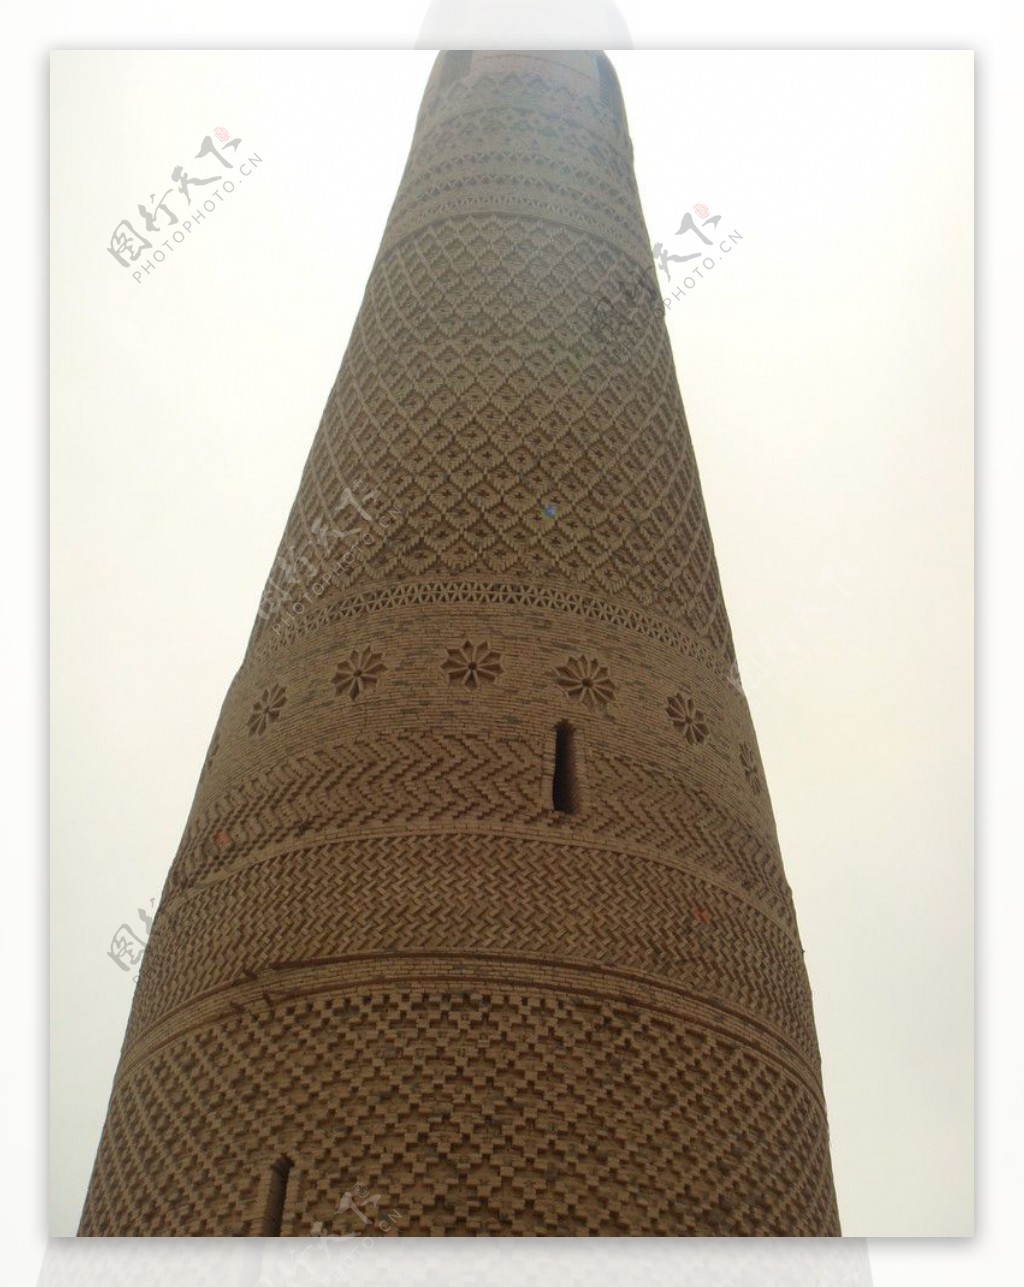 新疆吐鲁番苏公塔细部砖雕纹理图片